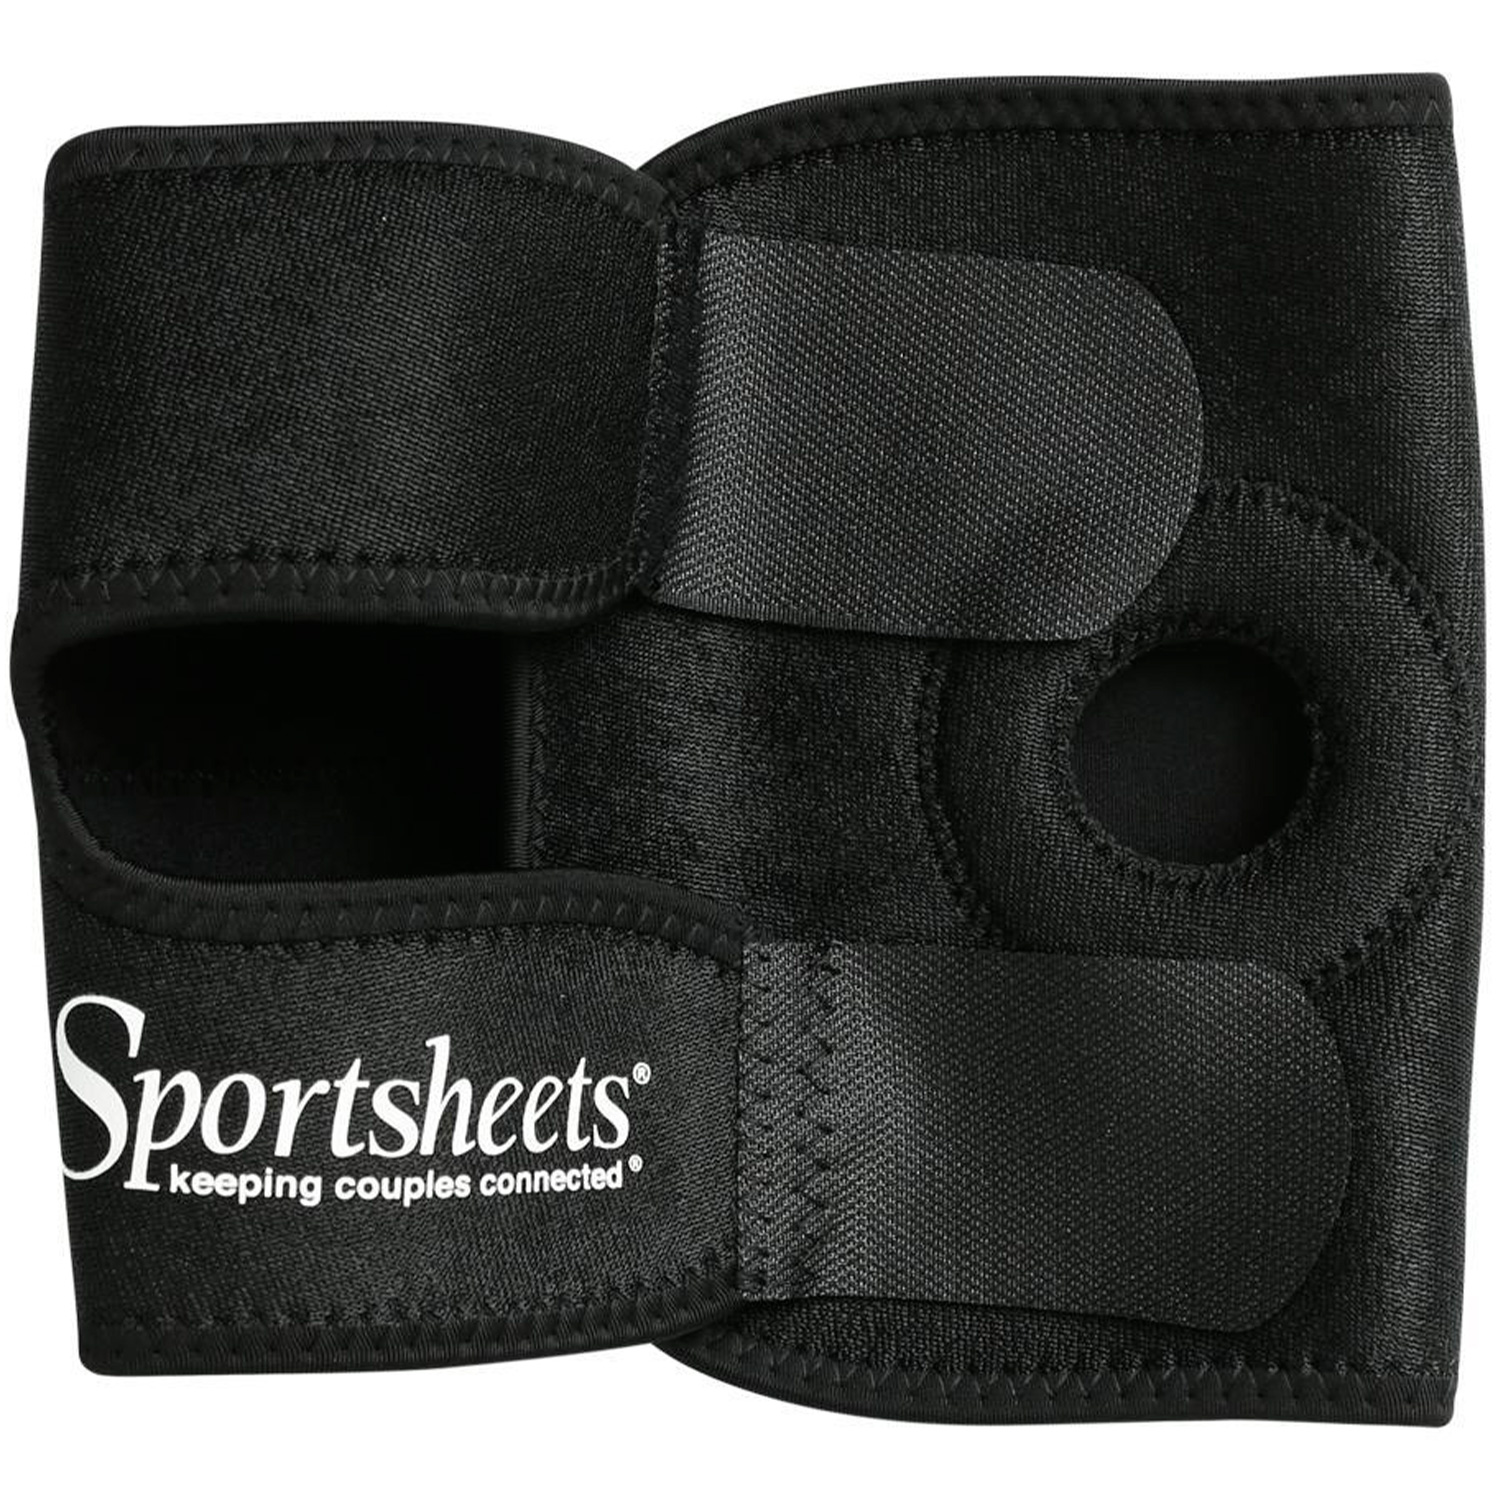 Sportsheets Strap-on Harness till Lår - Sportsheets